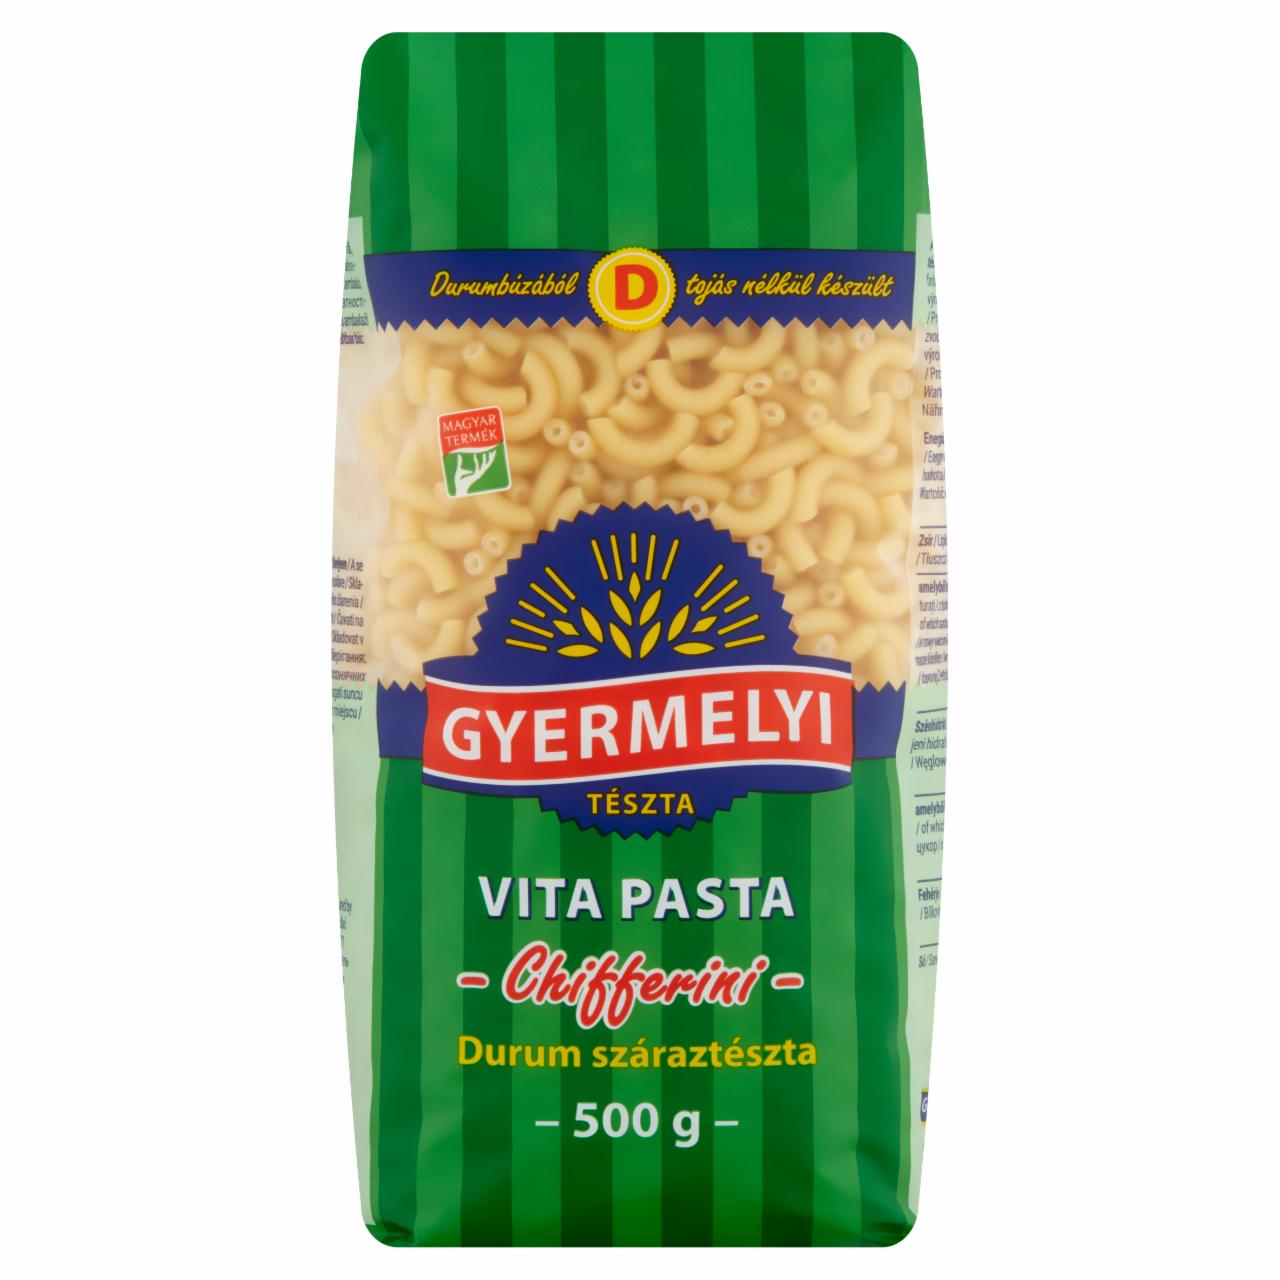 Képek - Gyermelyi Vita Pasta Chifferini durum száraztészta 500 g